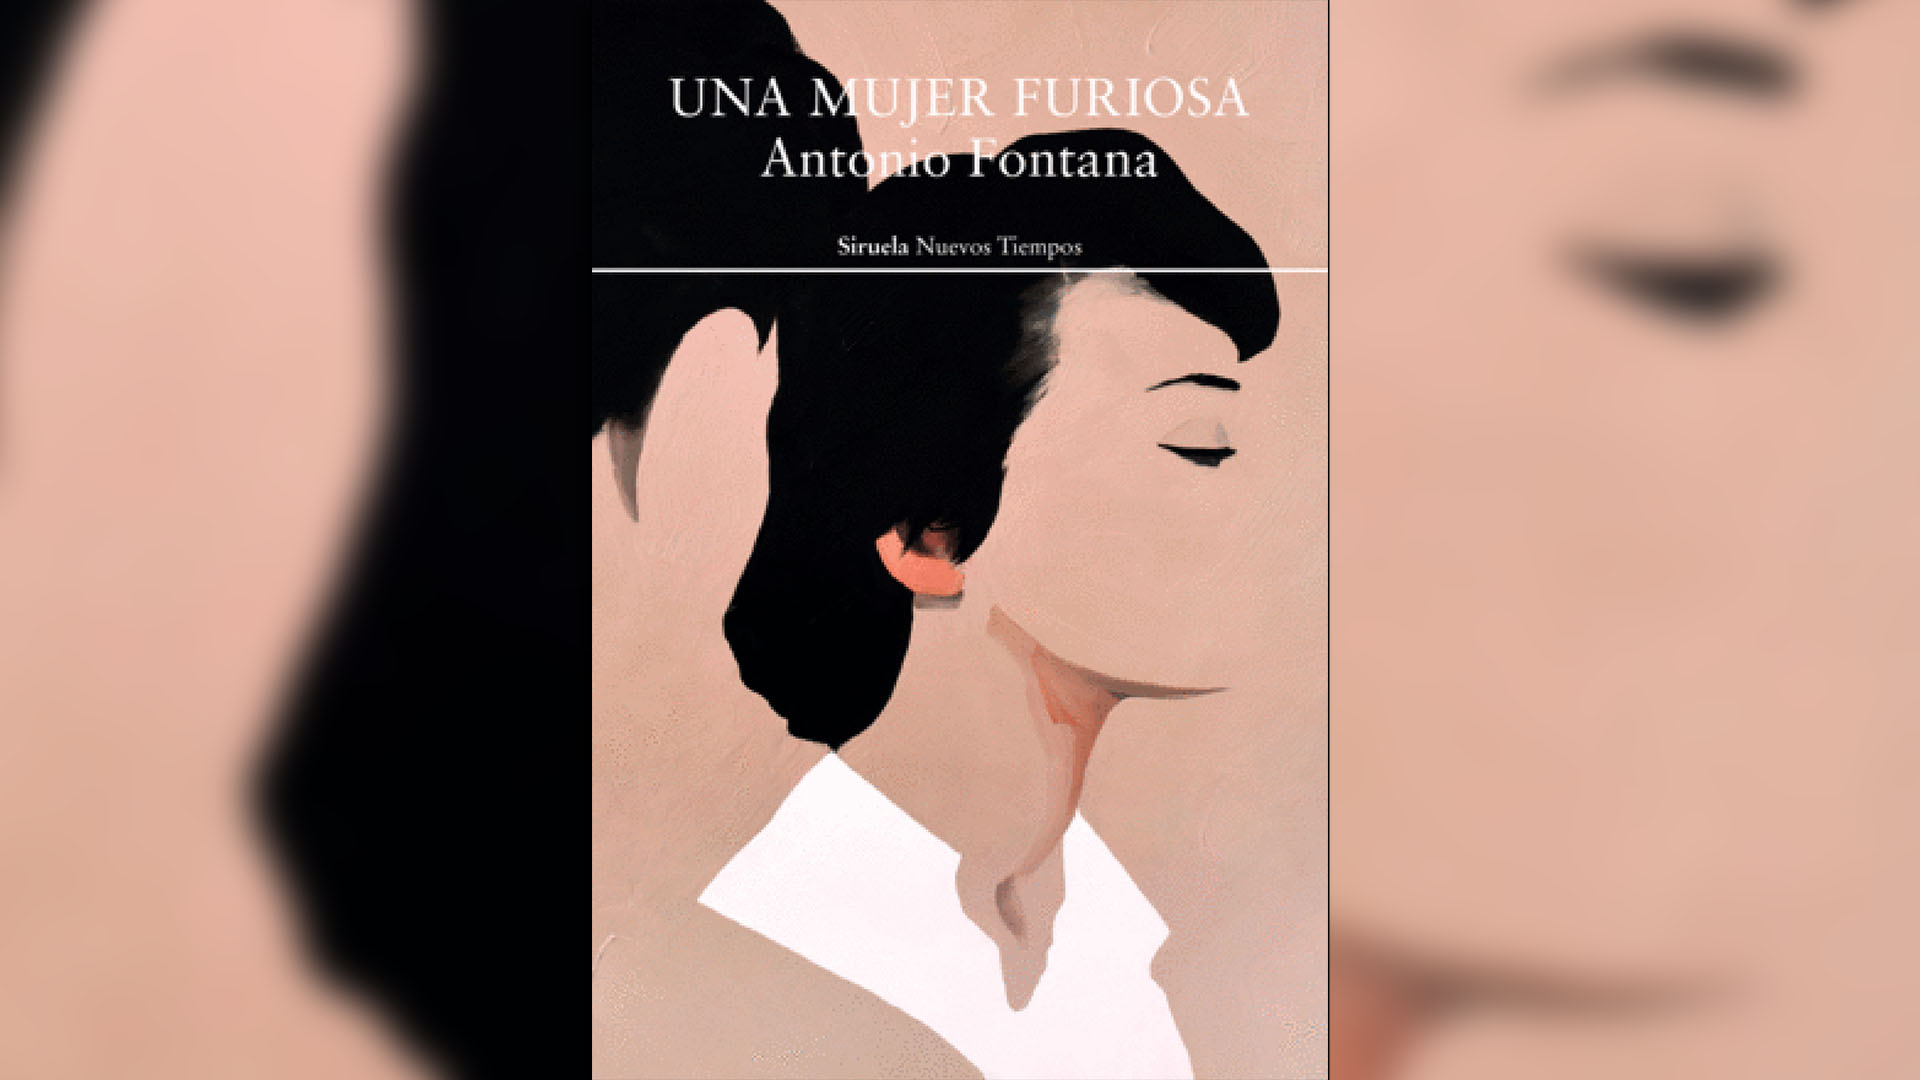 La homosexualidad oculta y los hilos del recuerdo infantil en “Una mujer furiosa”, de Antonio Fontana